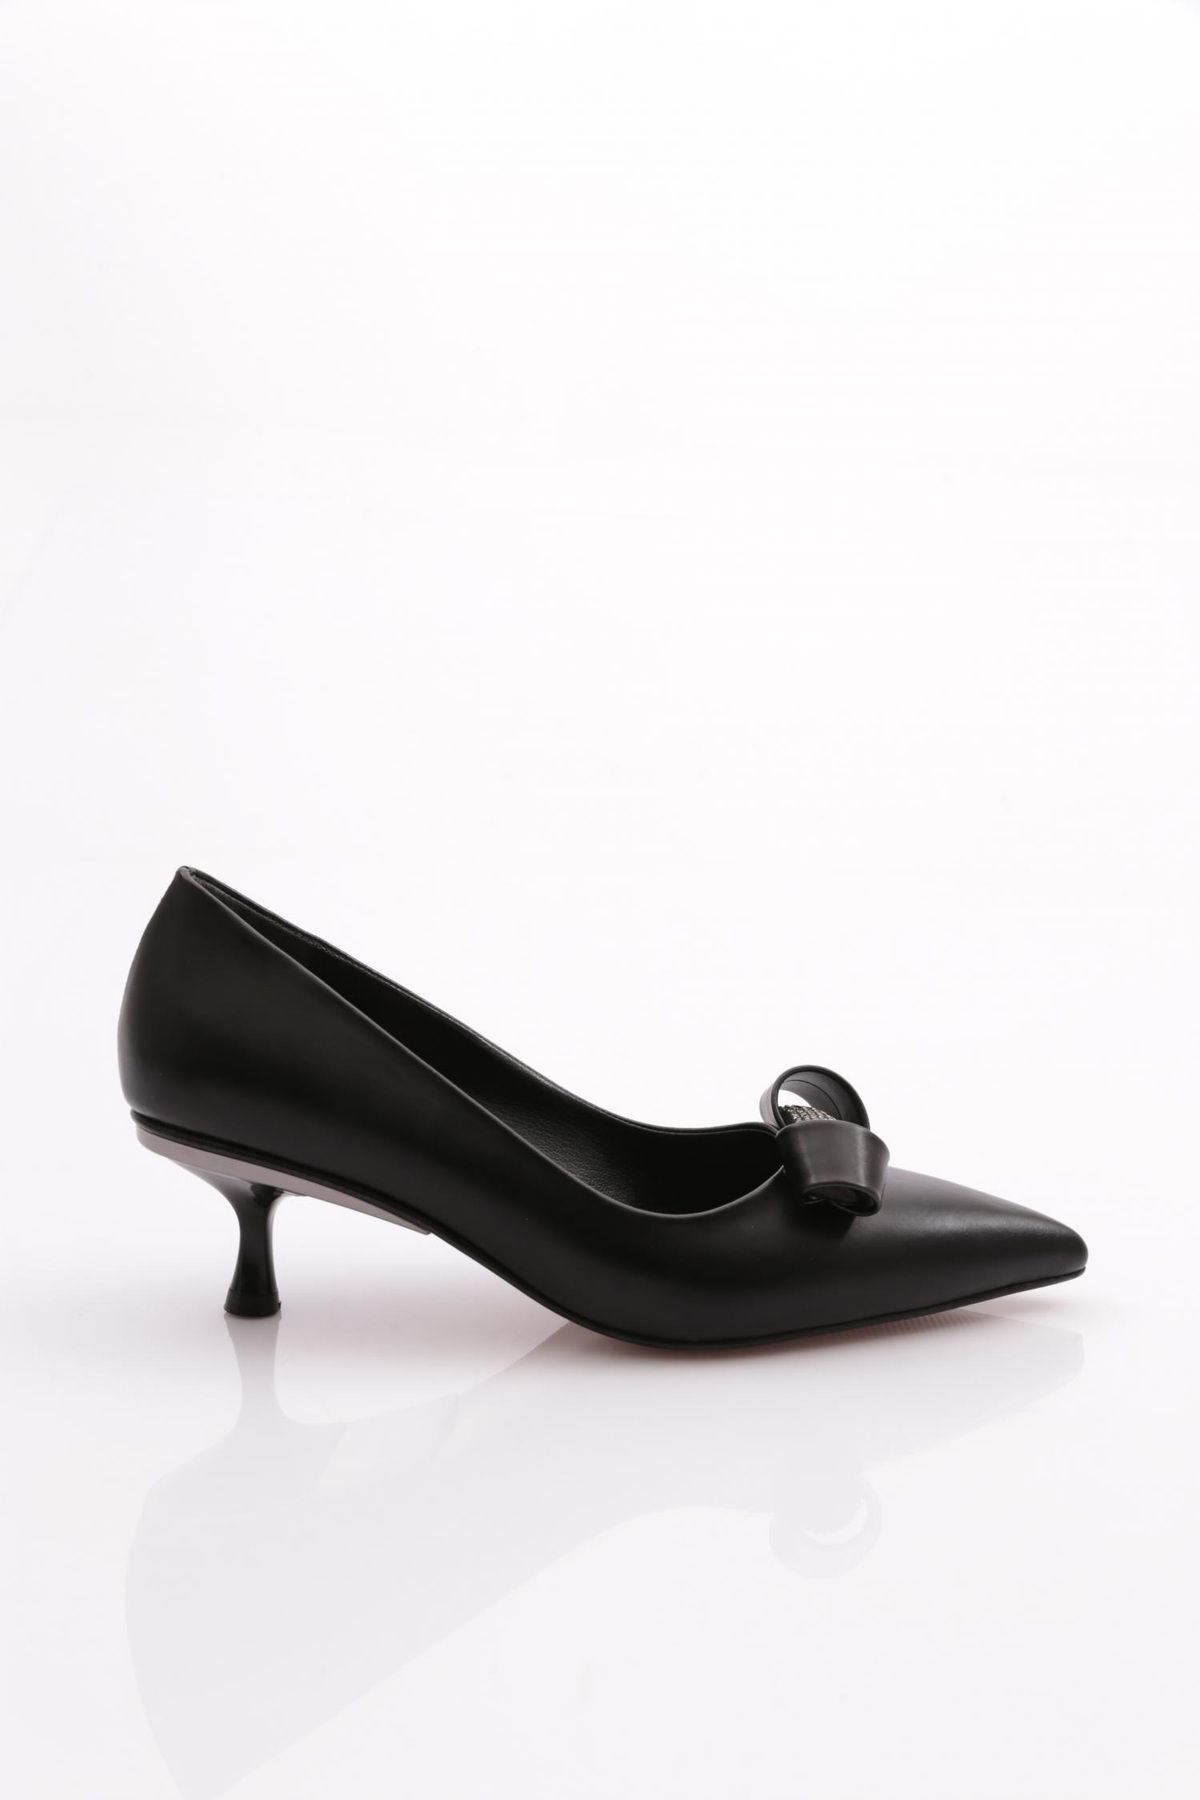 Dgn 0551 Kadın Üstü Taşlı Topuklu Ayakkabı Siyah